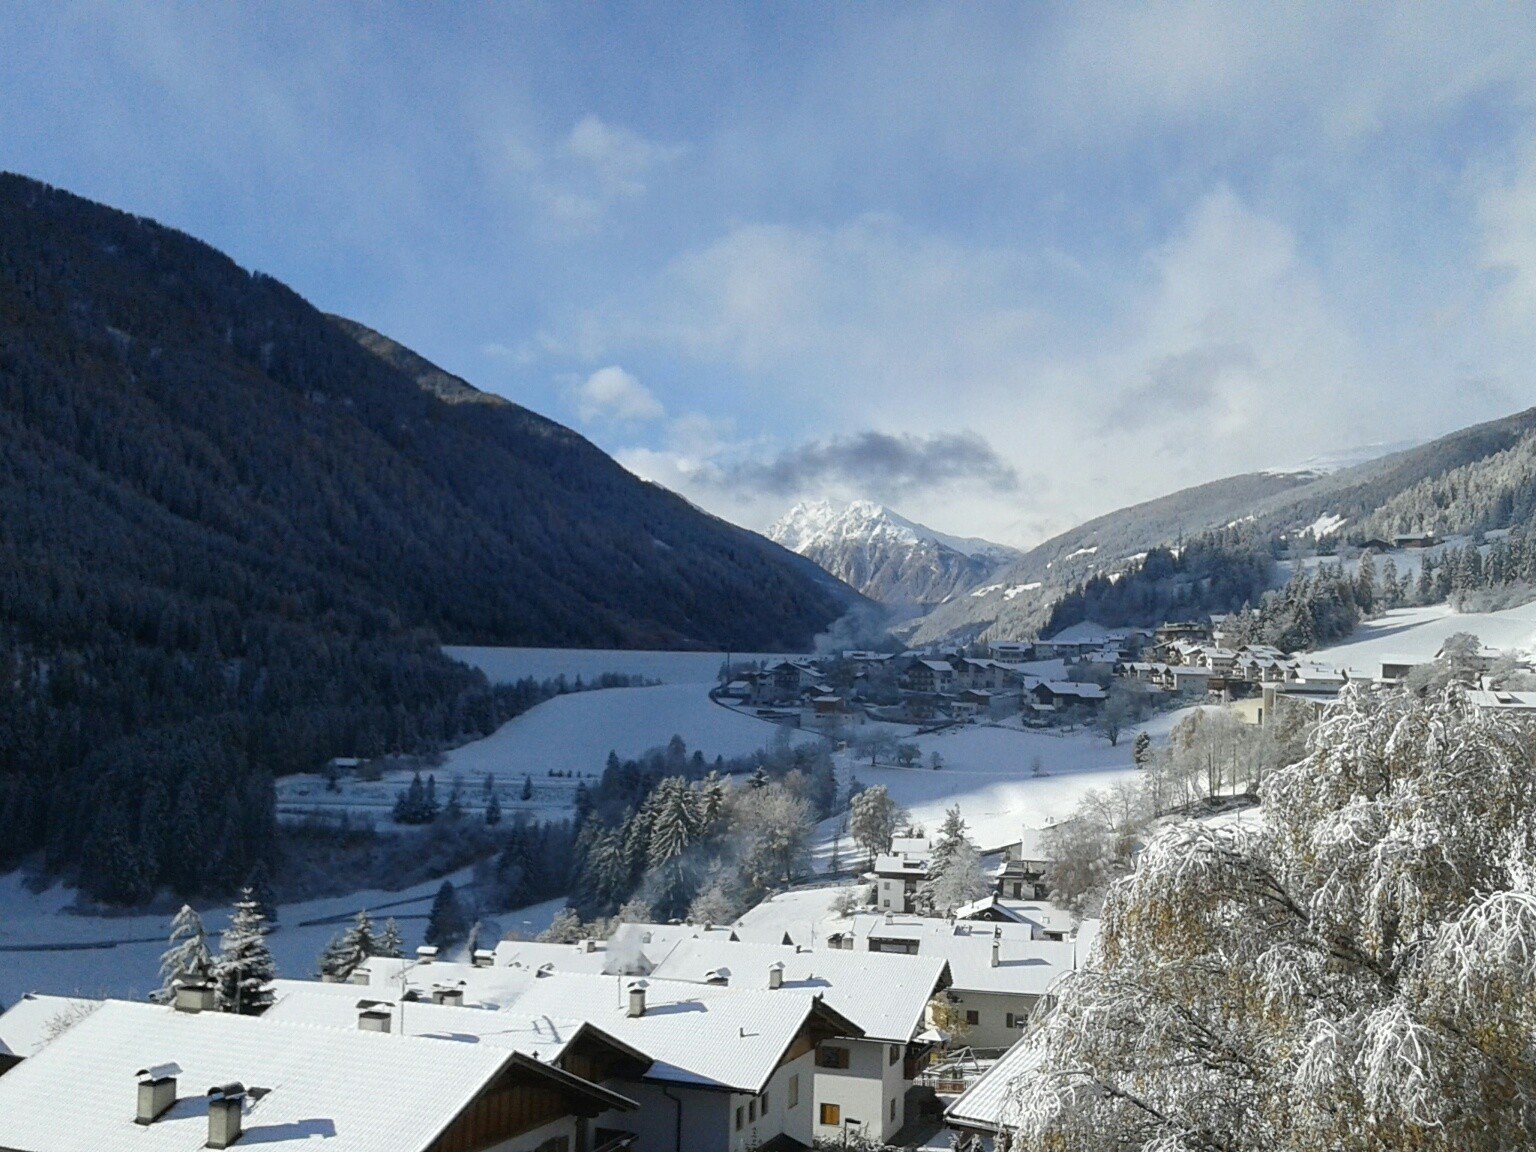 Aussicht vom Hotel Schweigl mit Blick auf das Dorf St. Walburg, die Berge, das Skigebiet Schwemmalm und bis ans Talende.